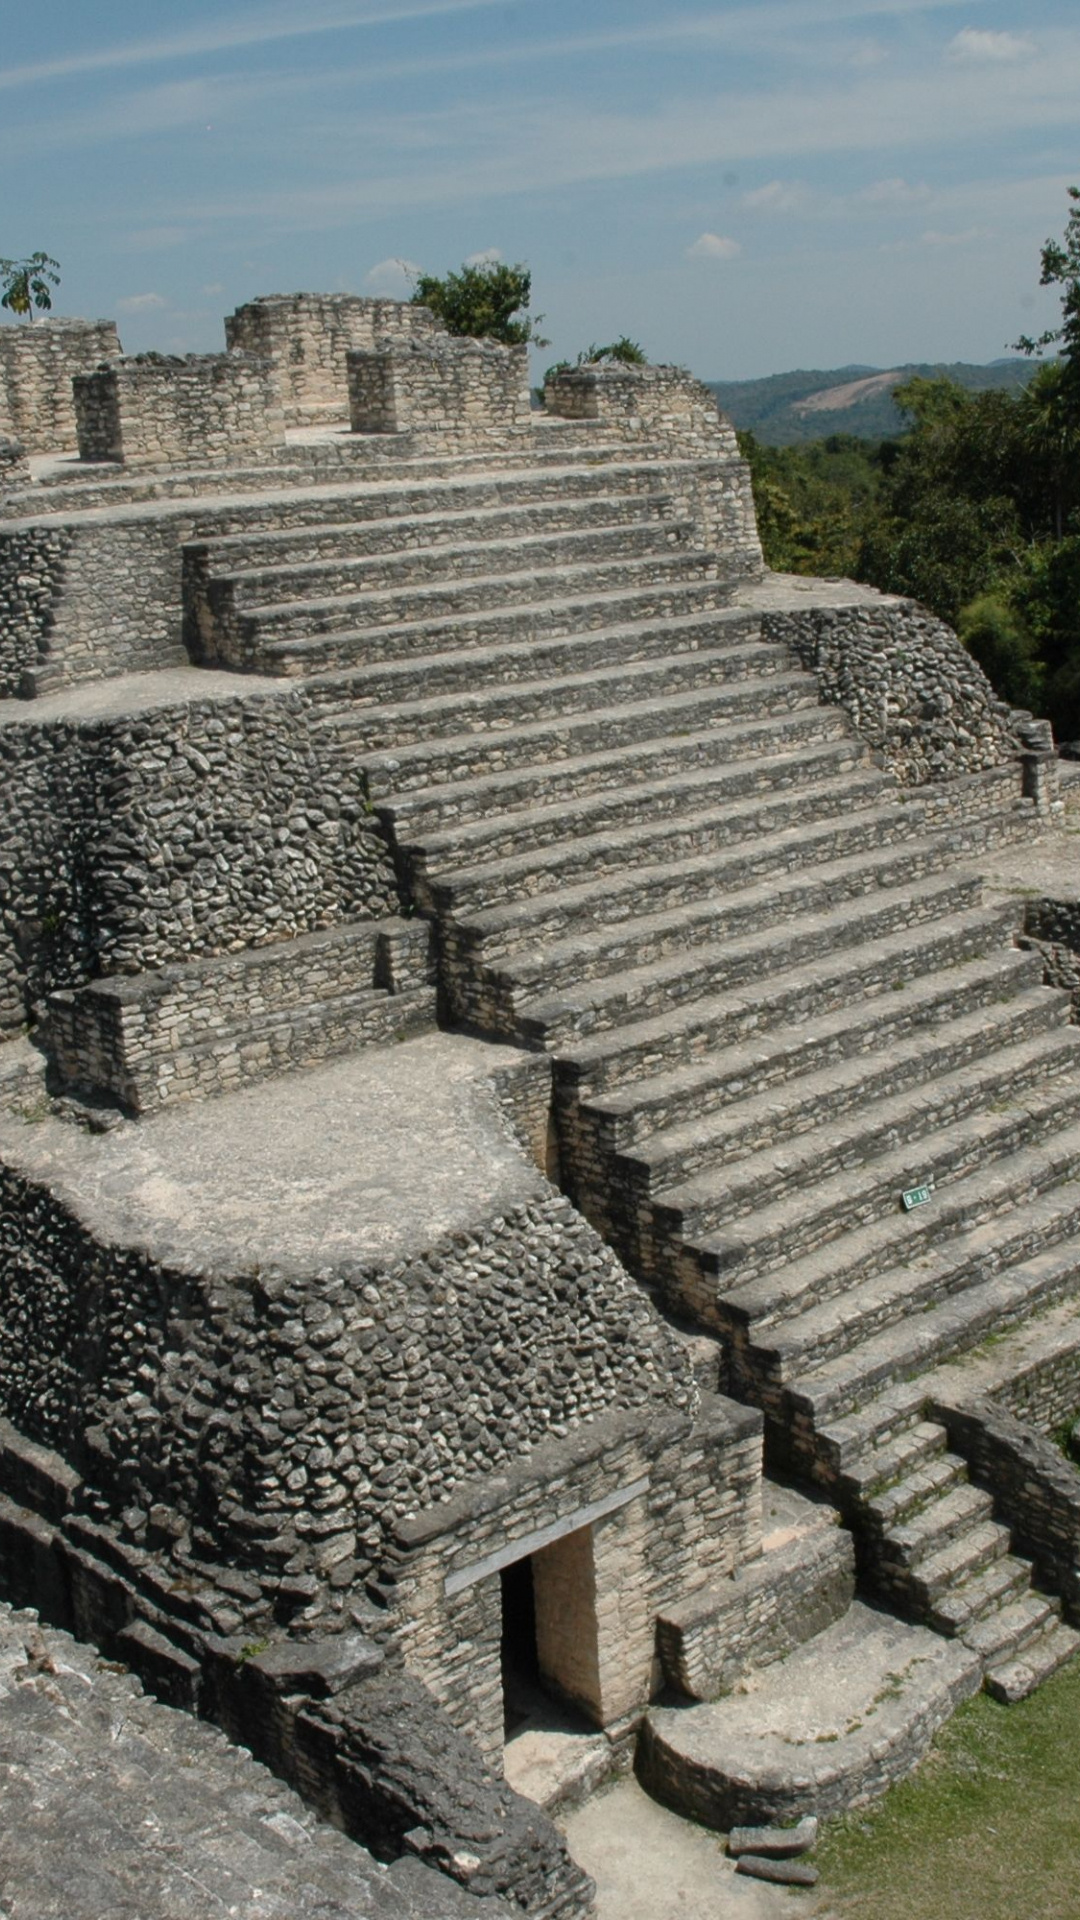 Marvel at Maya ruins, HD wallpapers, Ancient history, Mysterious pyramids, 1080x1920 Full HD Handy